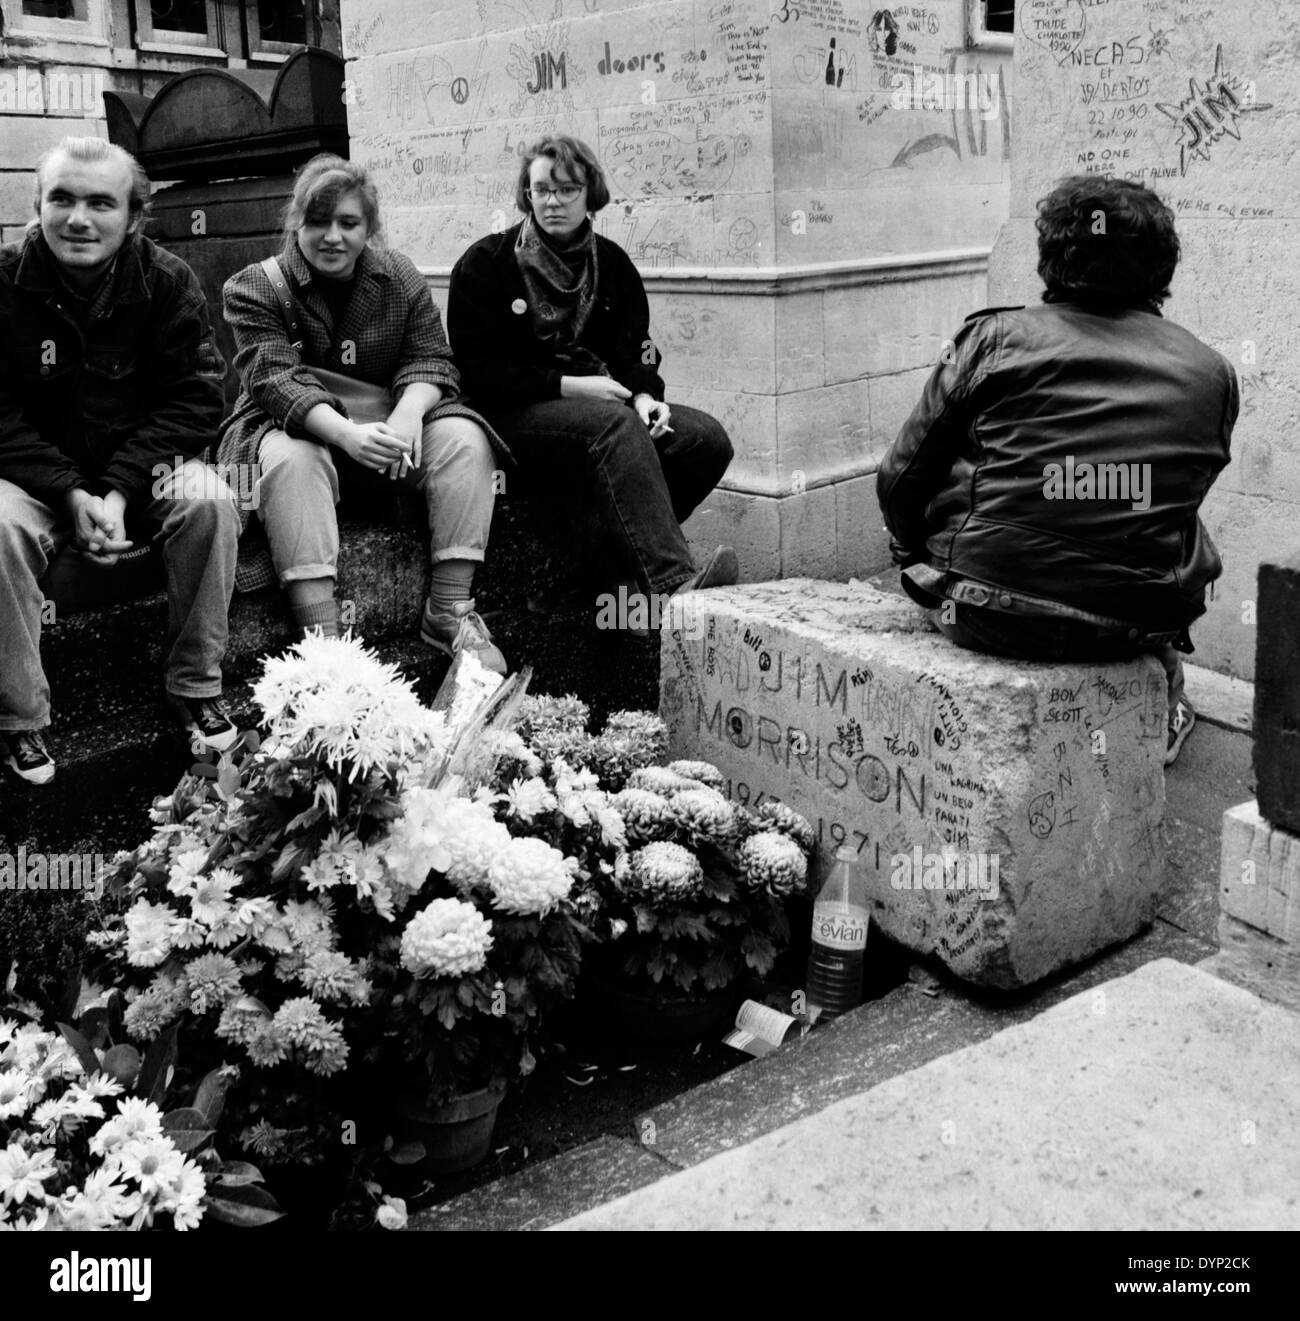 The grave of rock legend Jim Morrison of the Doors in Père Lachaise cemetery, Paris, 1989 Stock Photo